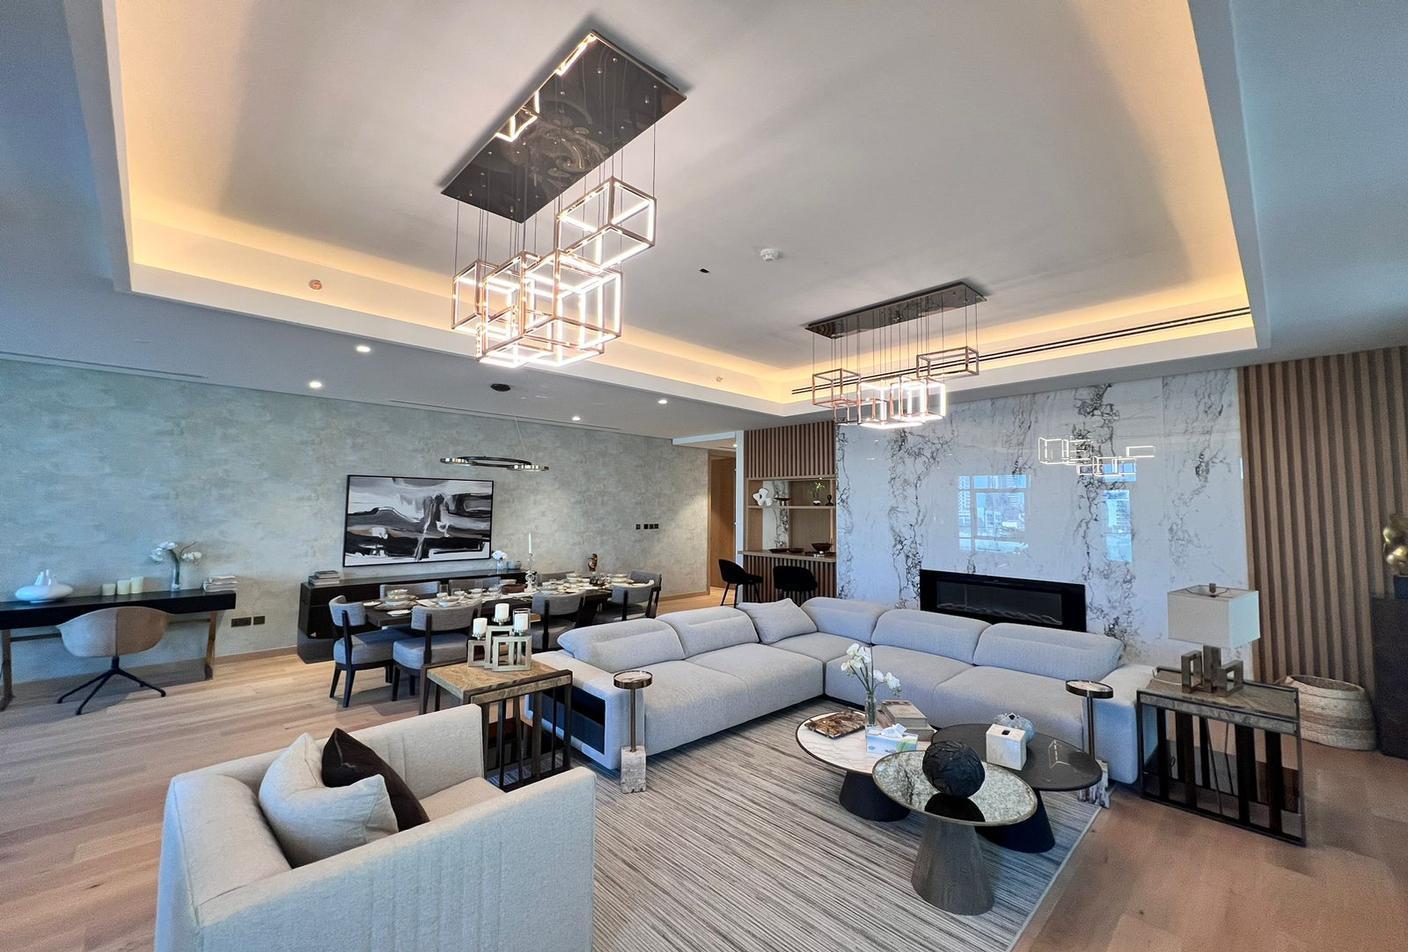 3 bed, 5 bath Hotel & Hotel Apartment for sale in One Reem Island, Shams Abu Dhabi, Al Reem Island, Abu Dhabi for price AED 4120000 